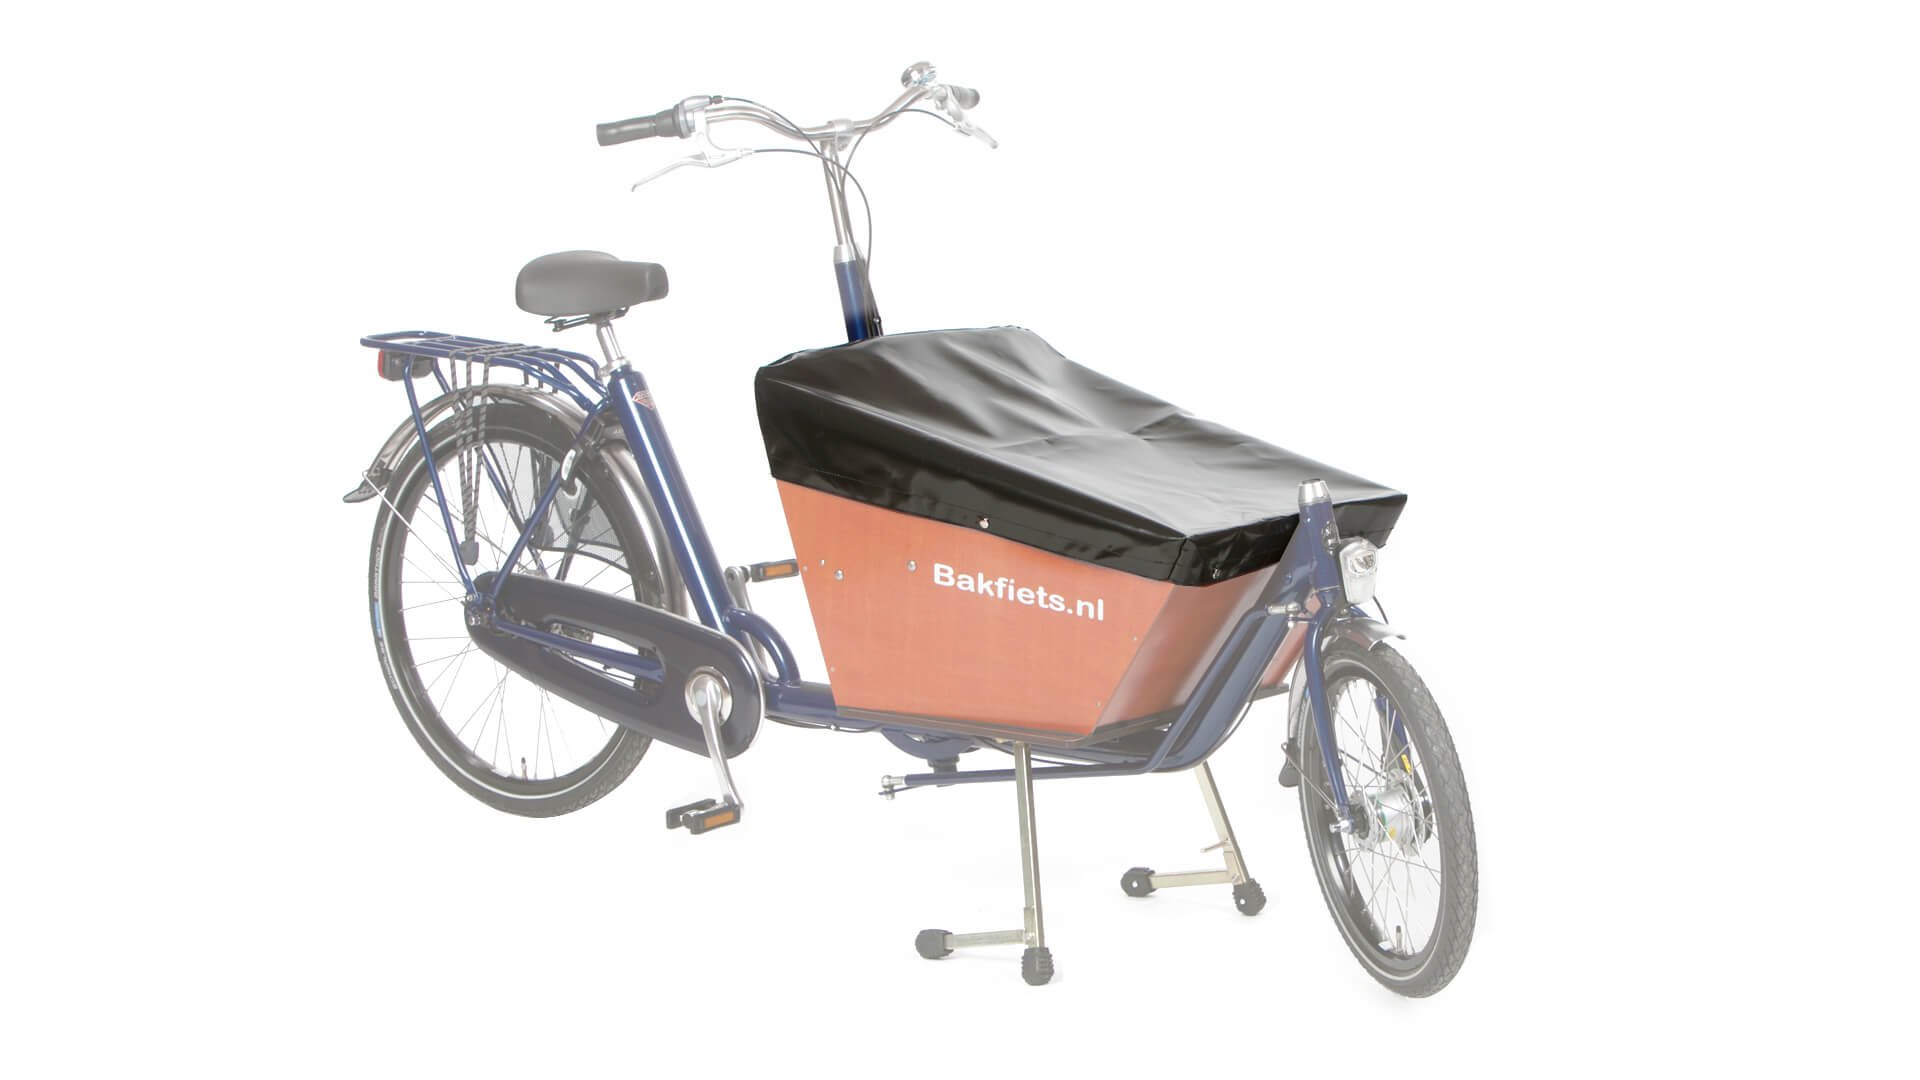 Housse pour vélo cargo - LeSpécialistedeBâches